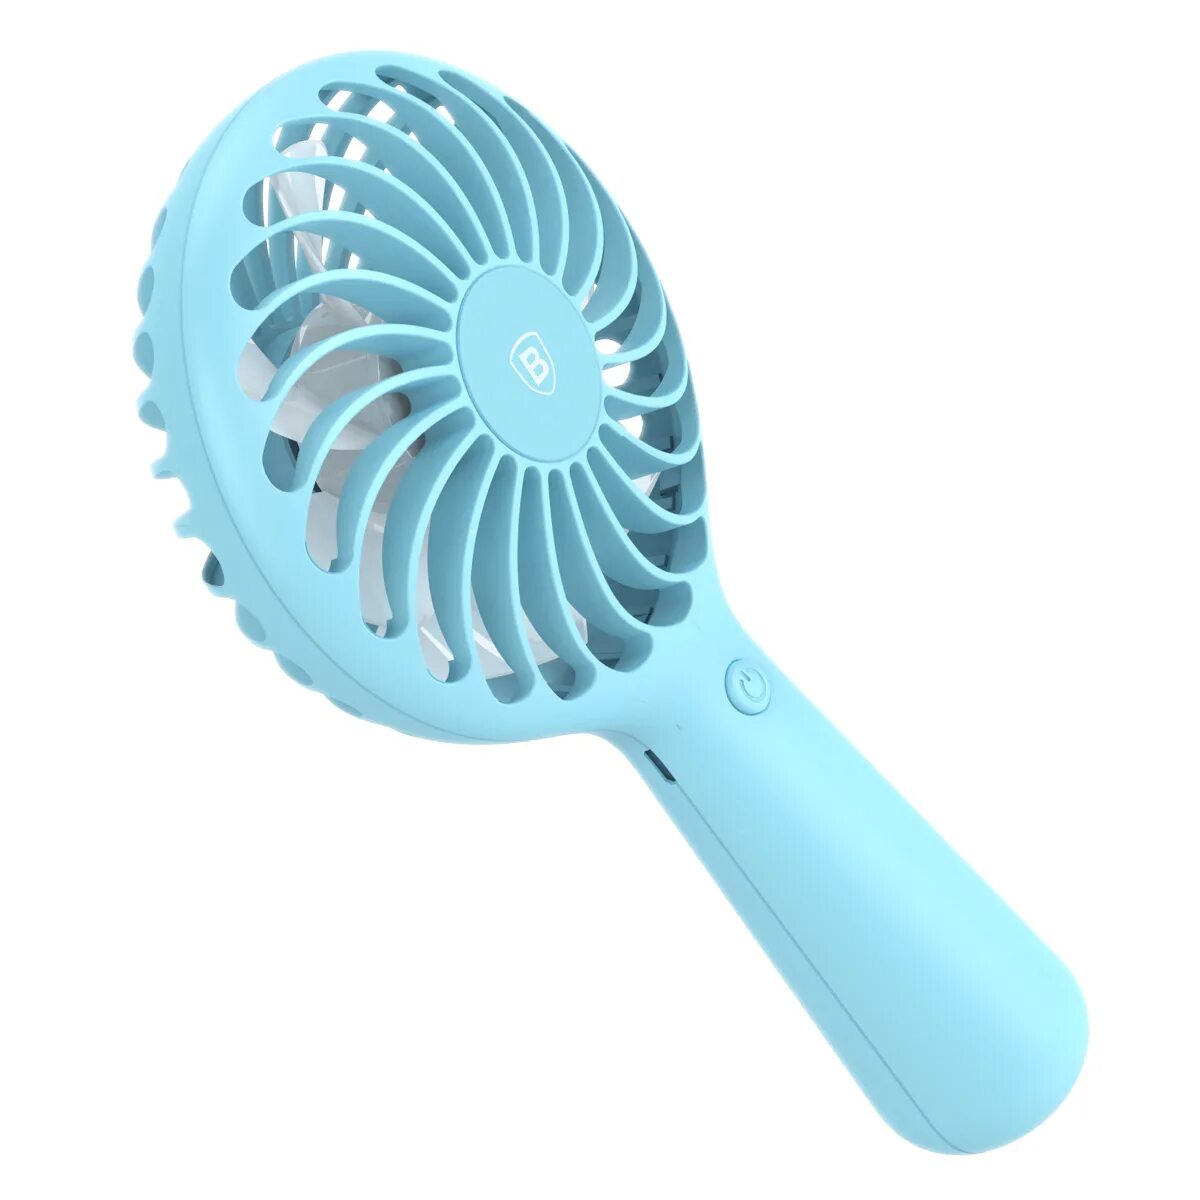 Fan blue. Портативный вентилятор Baseus lightly Portable Fan. Baseus вентилятор ручной. Fan цвет. Portable Fan Series.